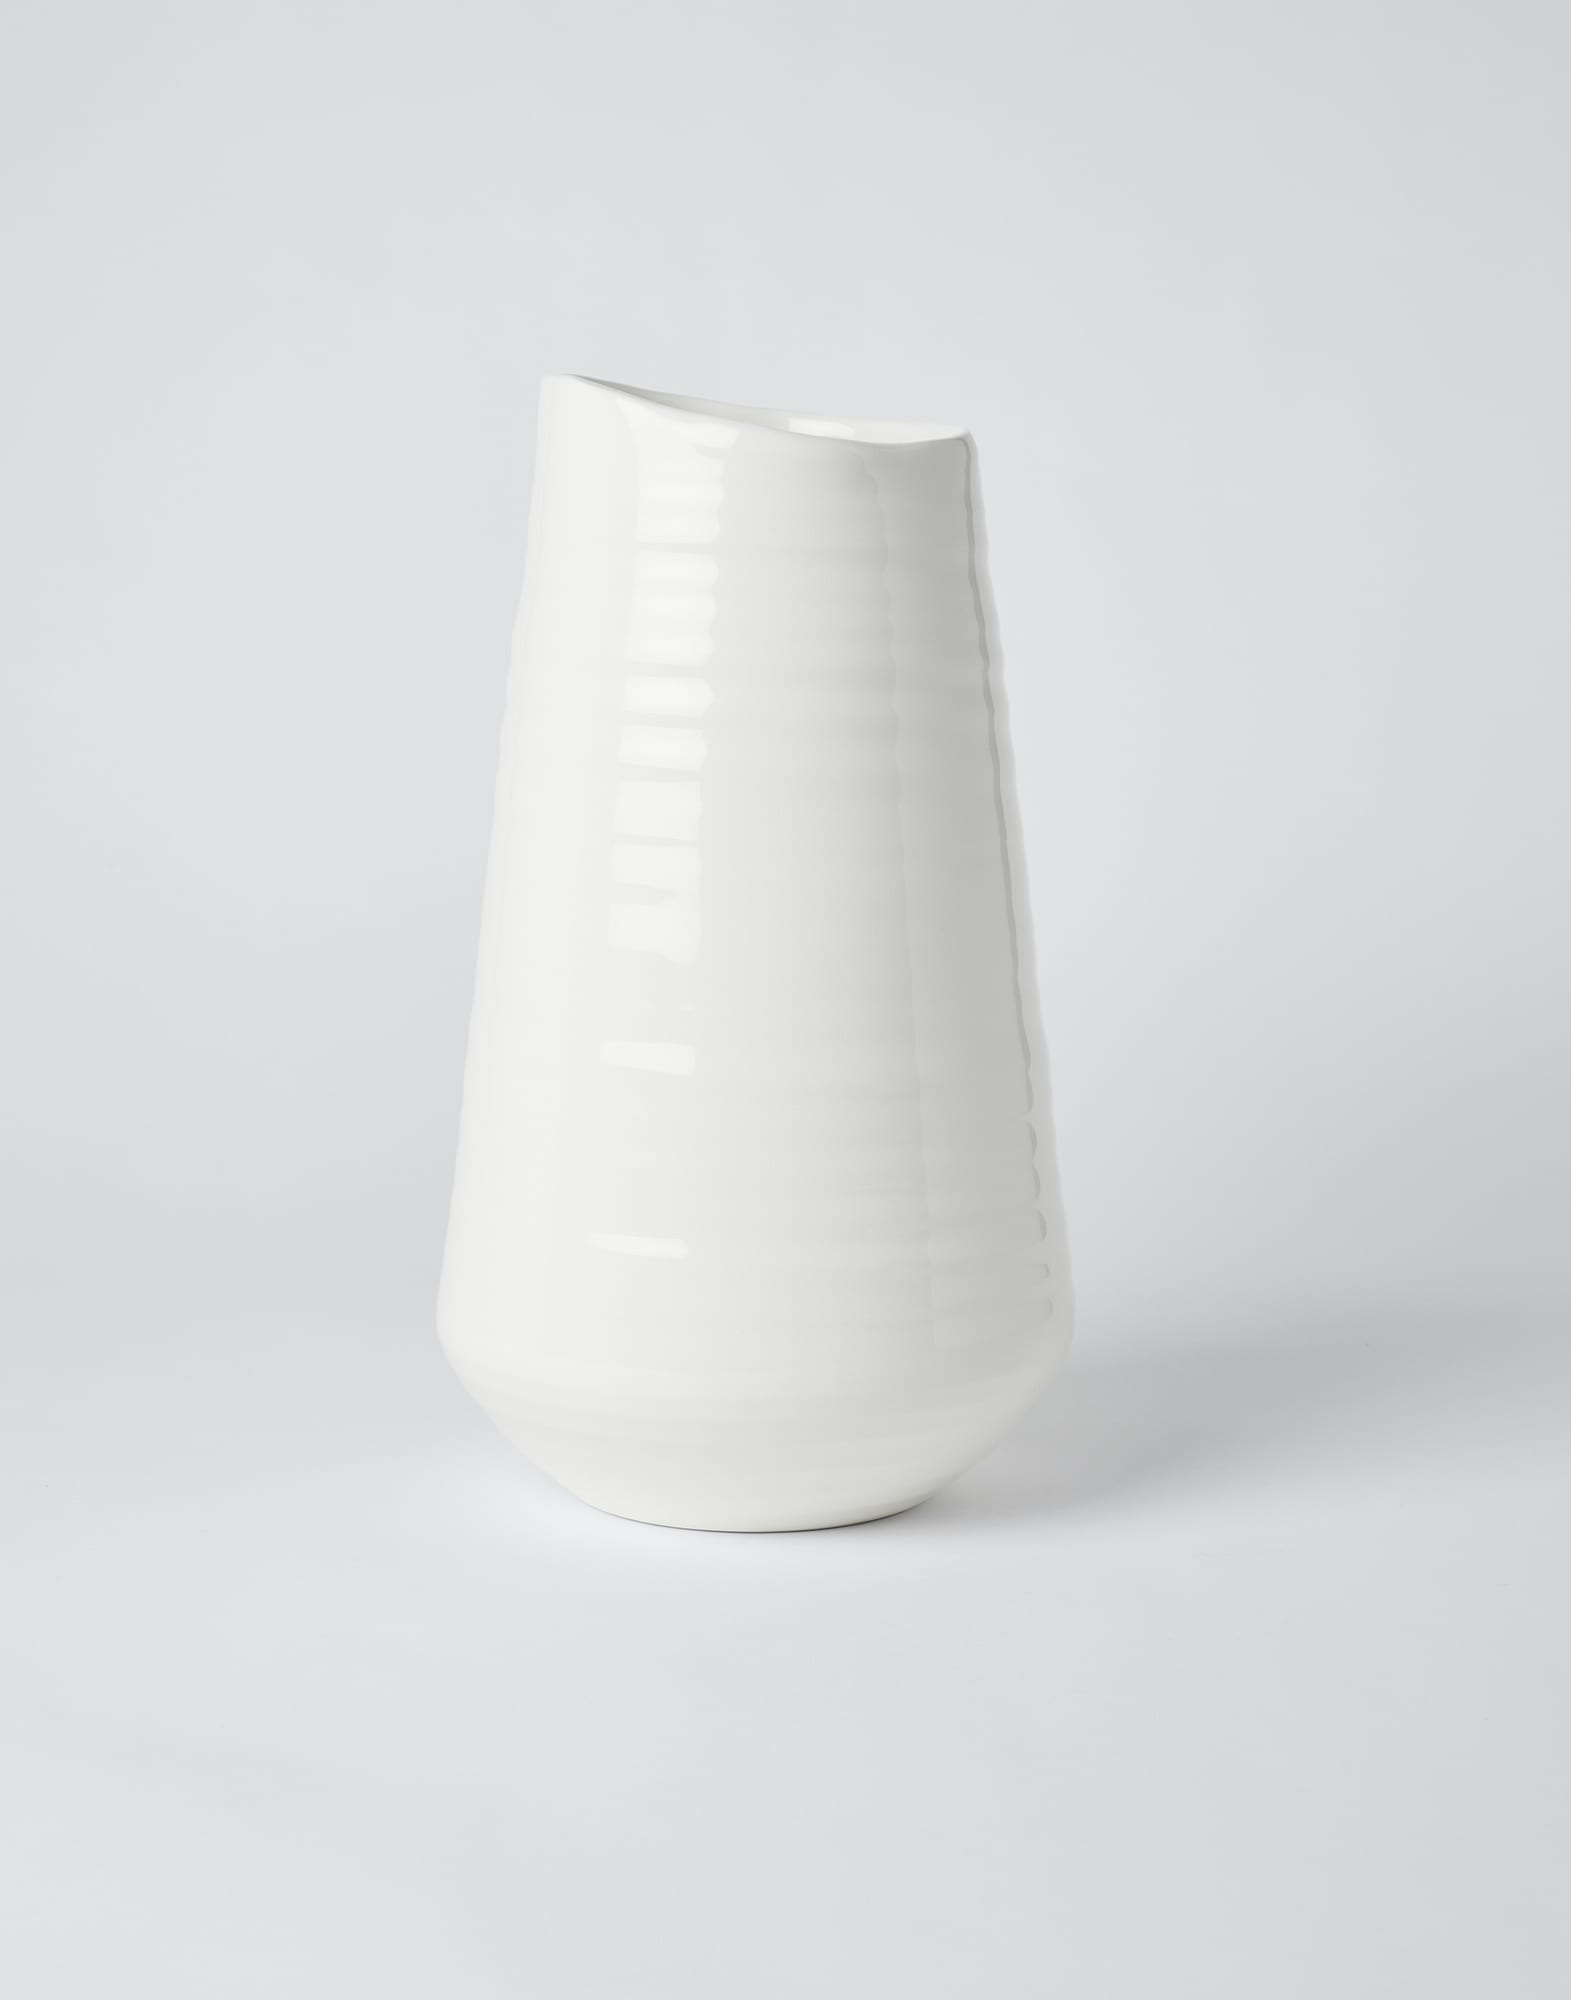 Maxi ceramic vase Milk Lifestyle - Brunello Cucinelli